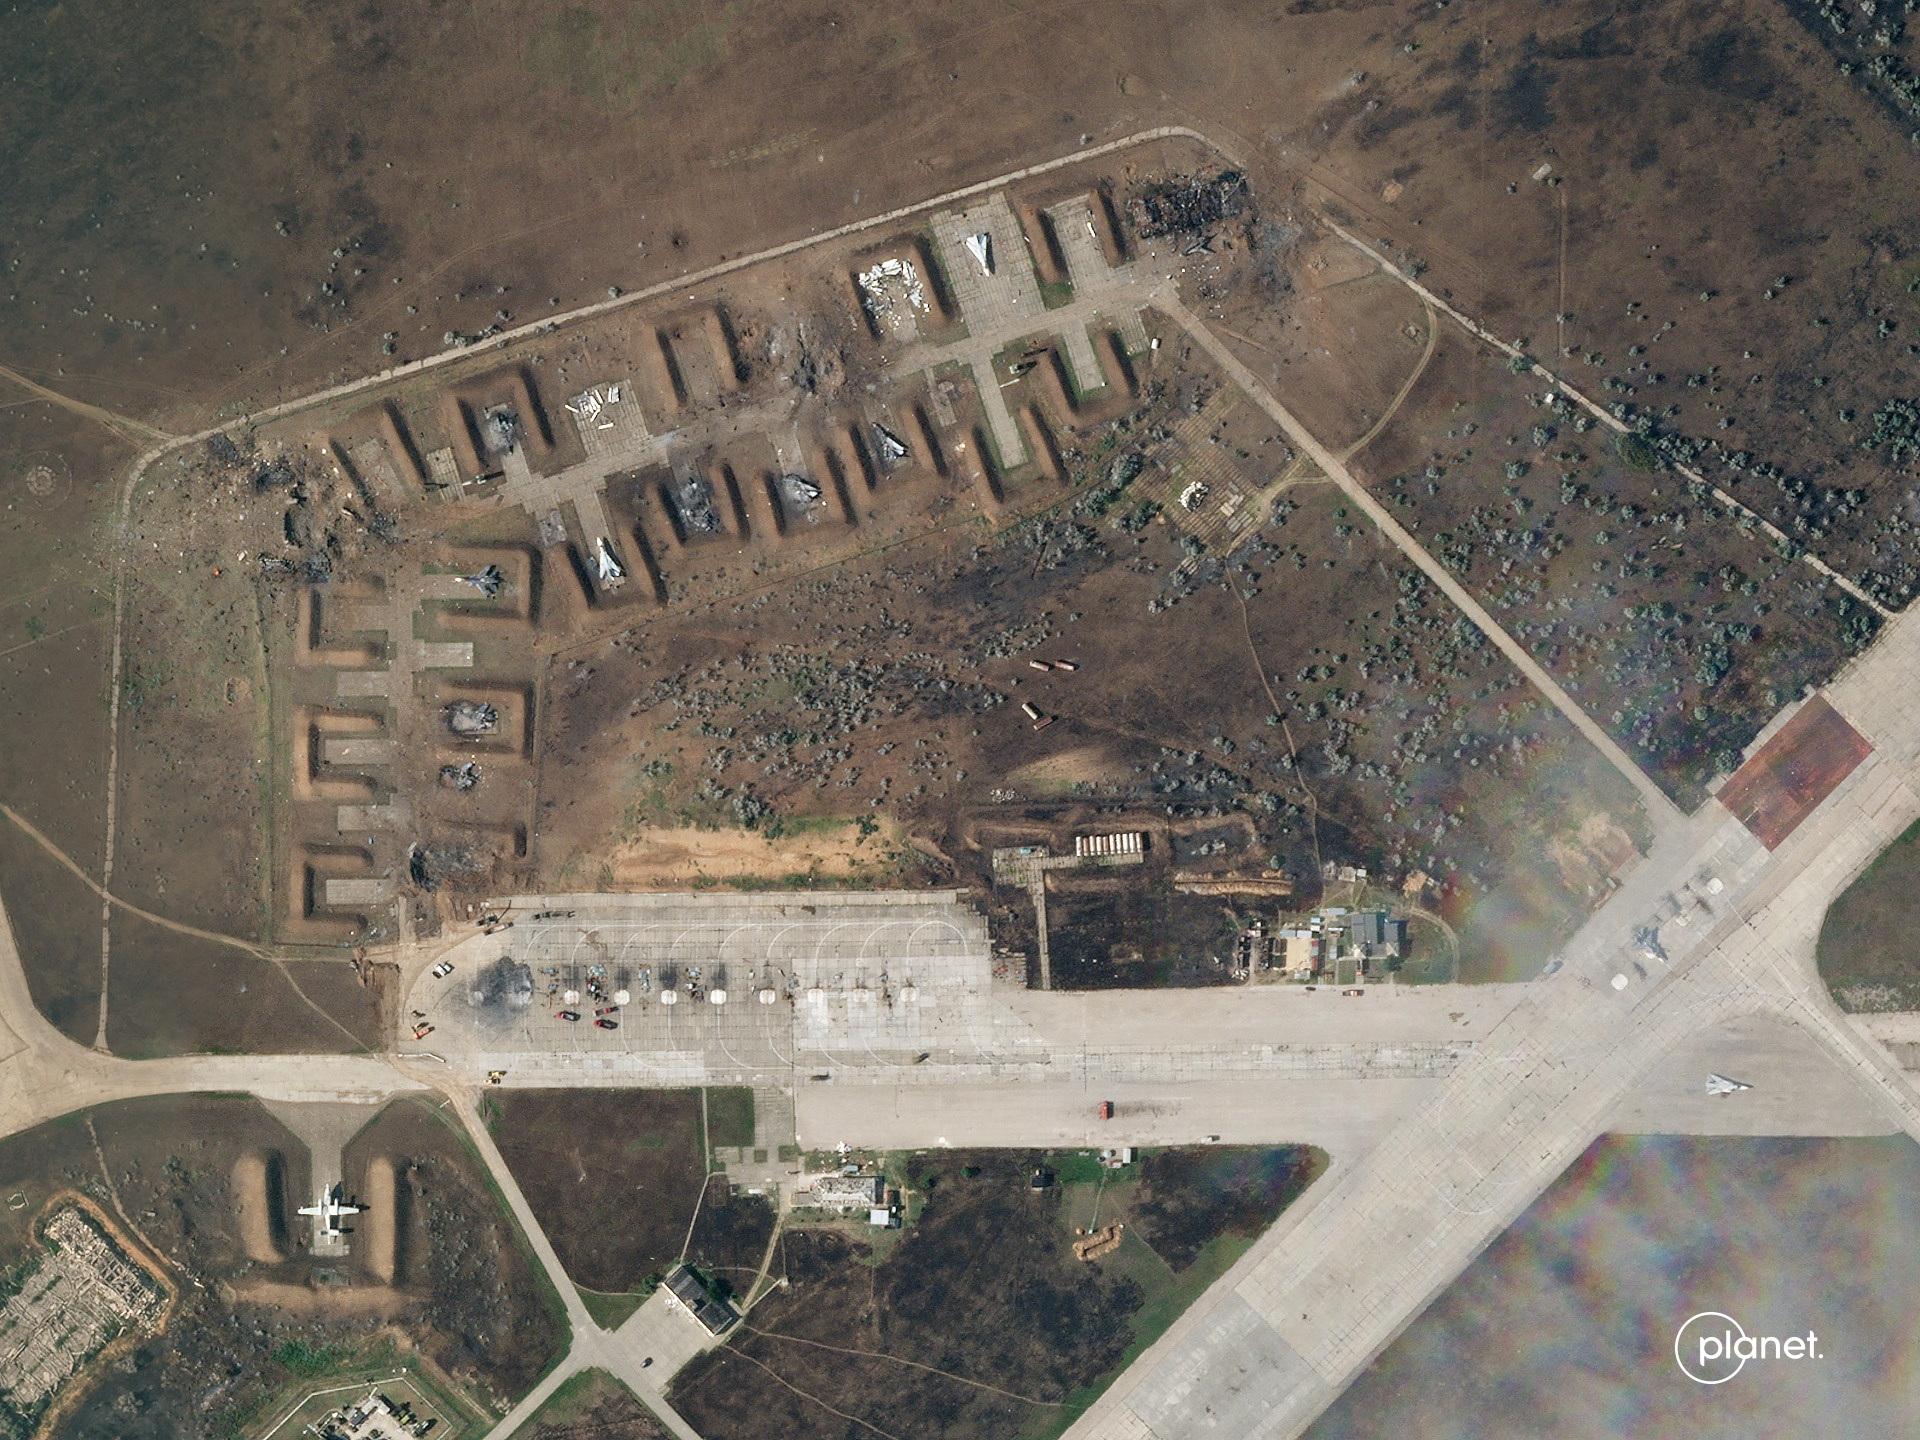 Ukrajina sa snaží obmedziť vytváranie satelitných snímok svojho územia, môže to využívať Moskva